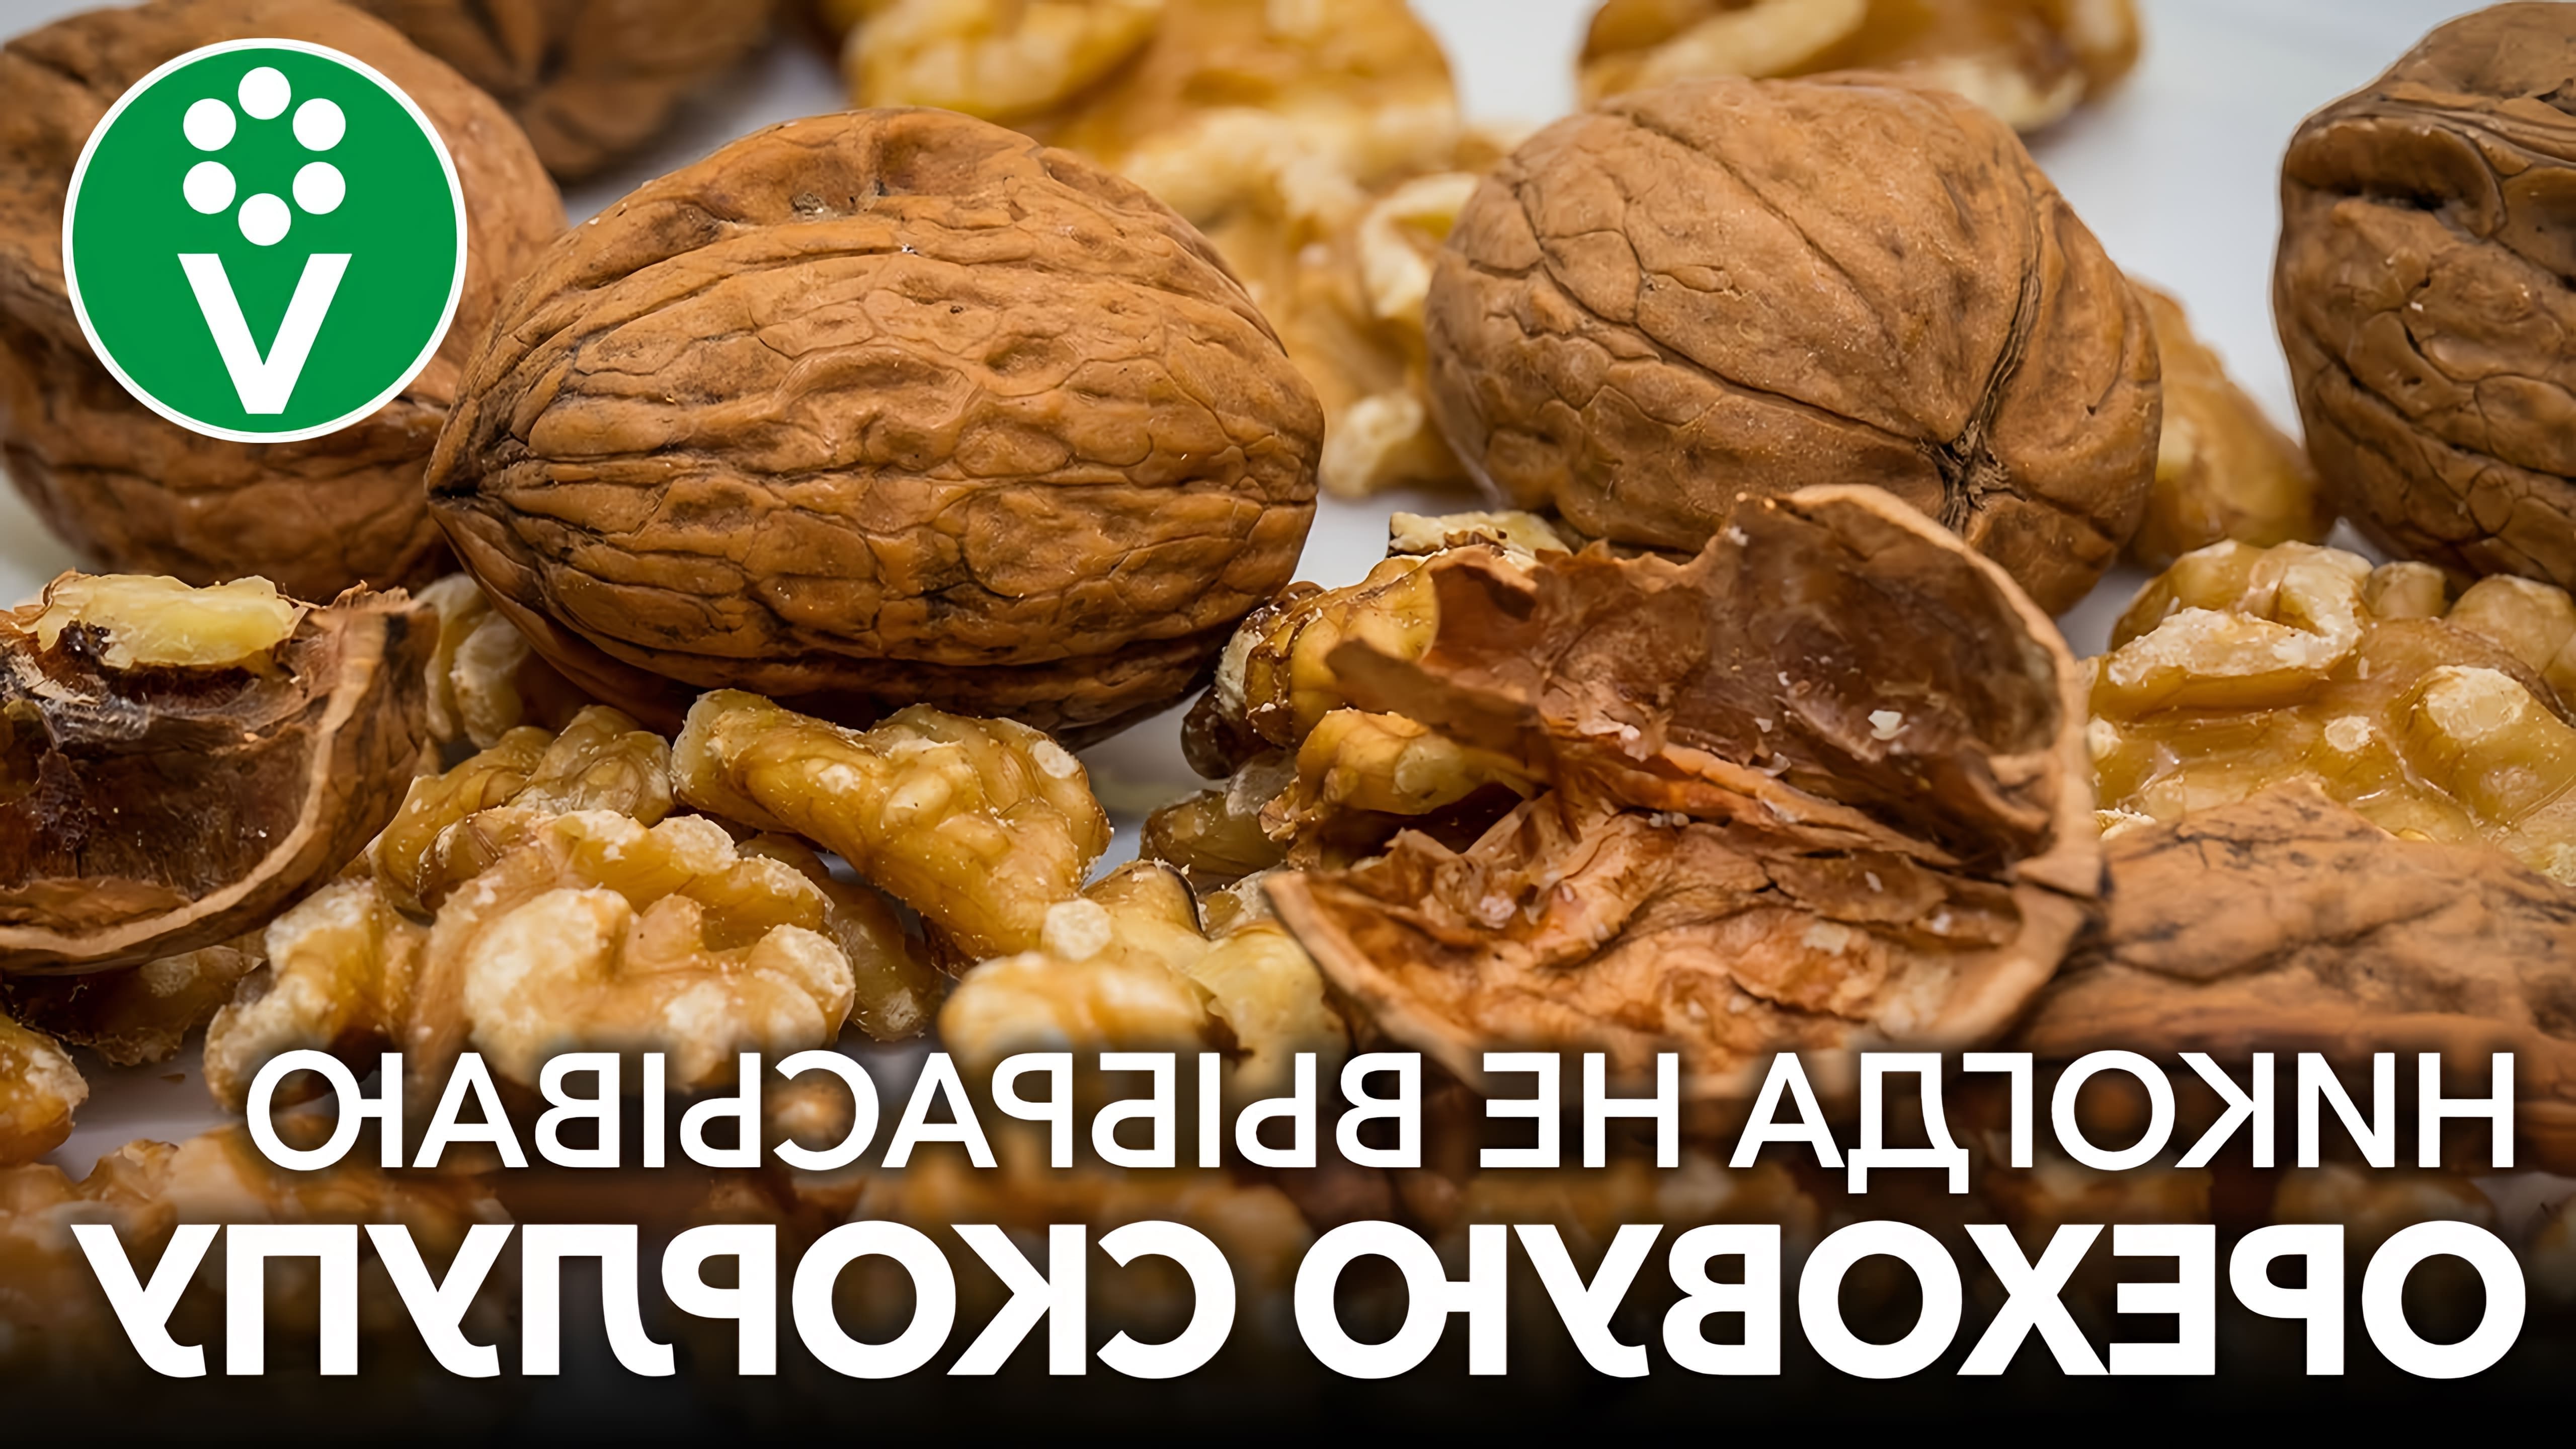 В этом видео рассказывается о полезных свойствах скорлупы грецкого ореха